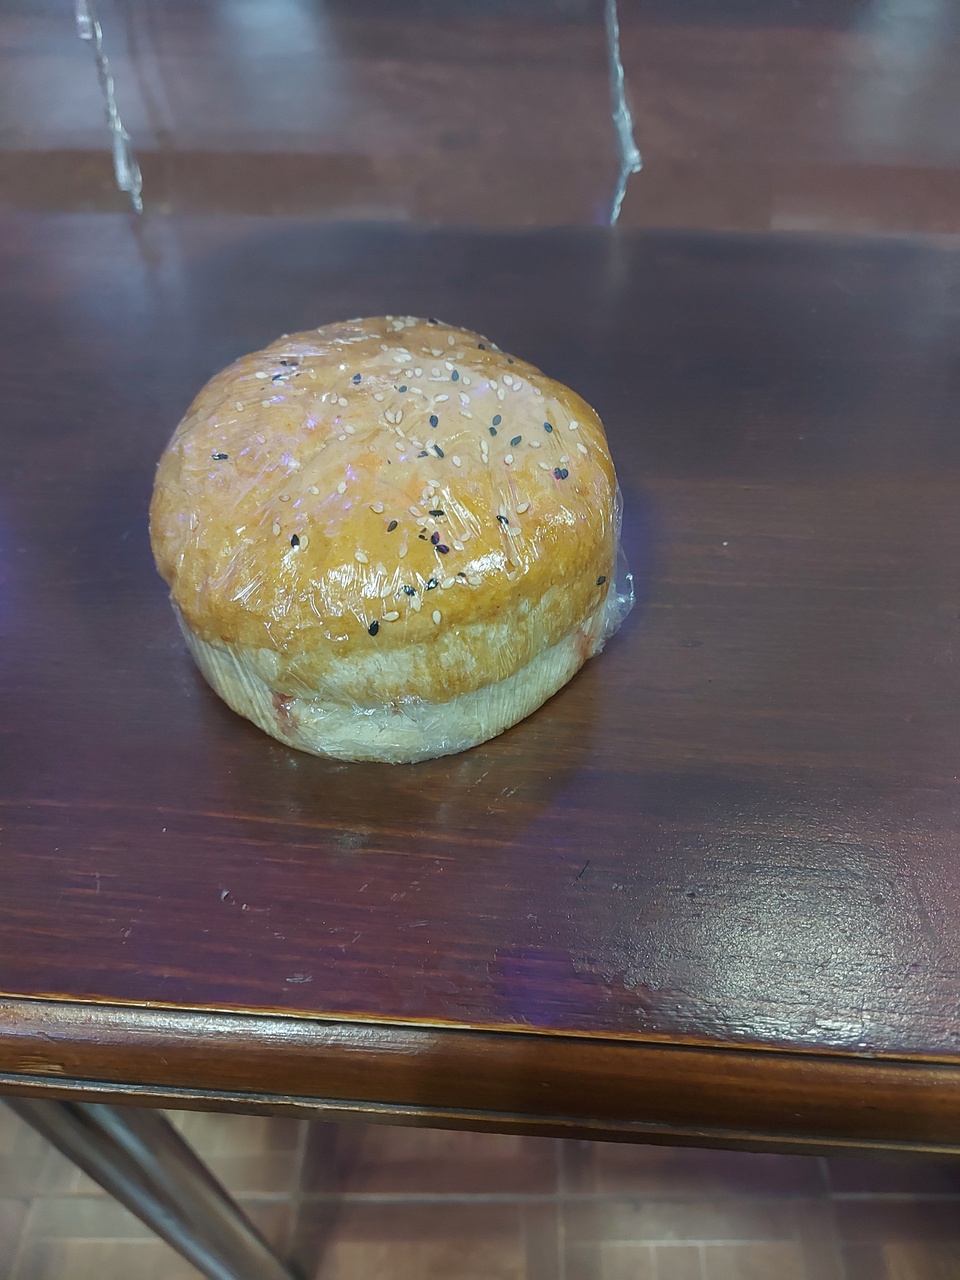 Сэндвич с куриным филе и жареной картошкой фри - 145 ₽, заказать онлайн.